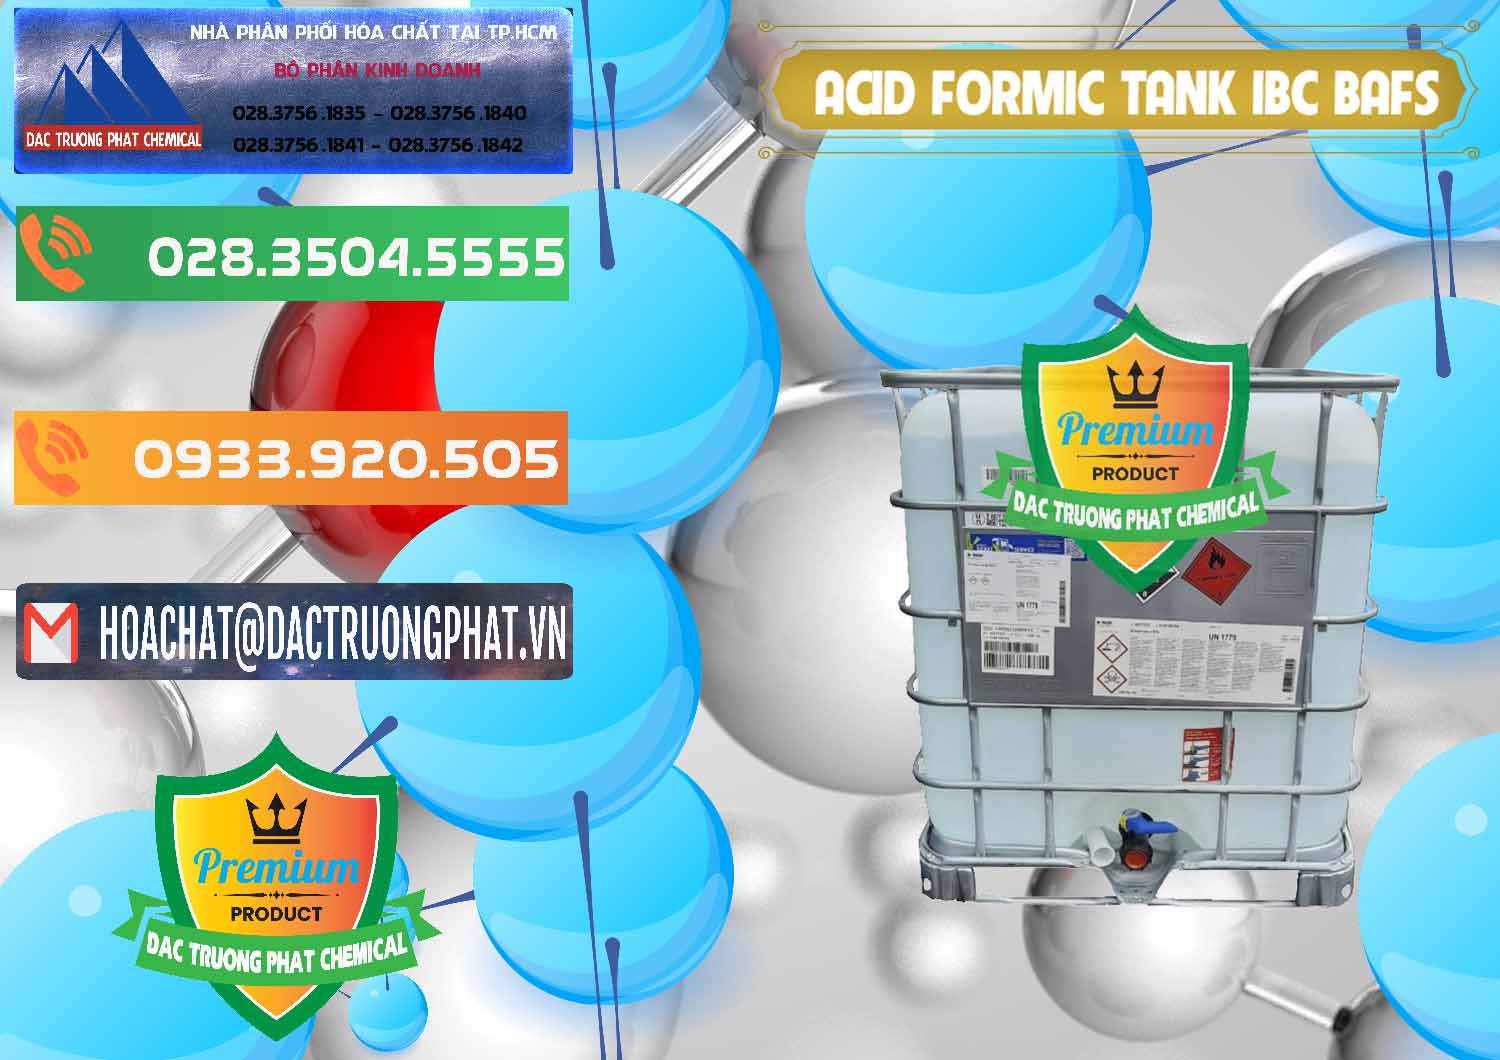 Công ty phân phối _ bán Acid Formic - Axit Formic Tank - Bồn IBC BASF Đức - 0366 - Chuyên cung cấp & phân phối hóa chất tại TP.HCM - hoachatxulynuoc.com.vn